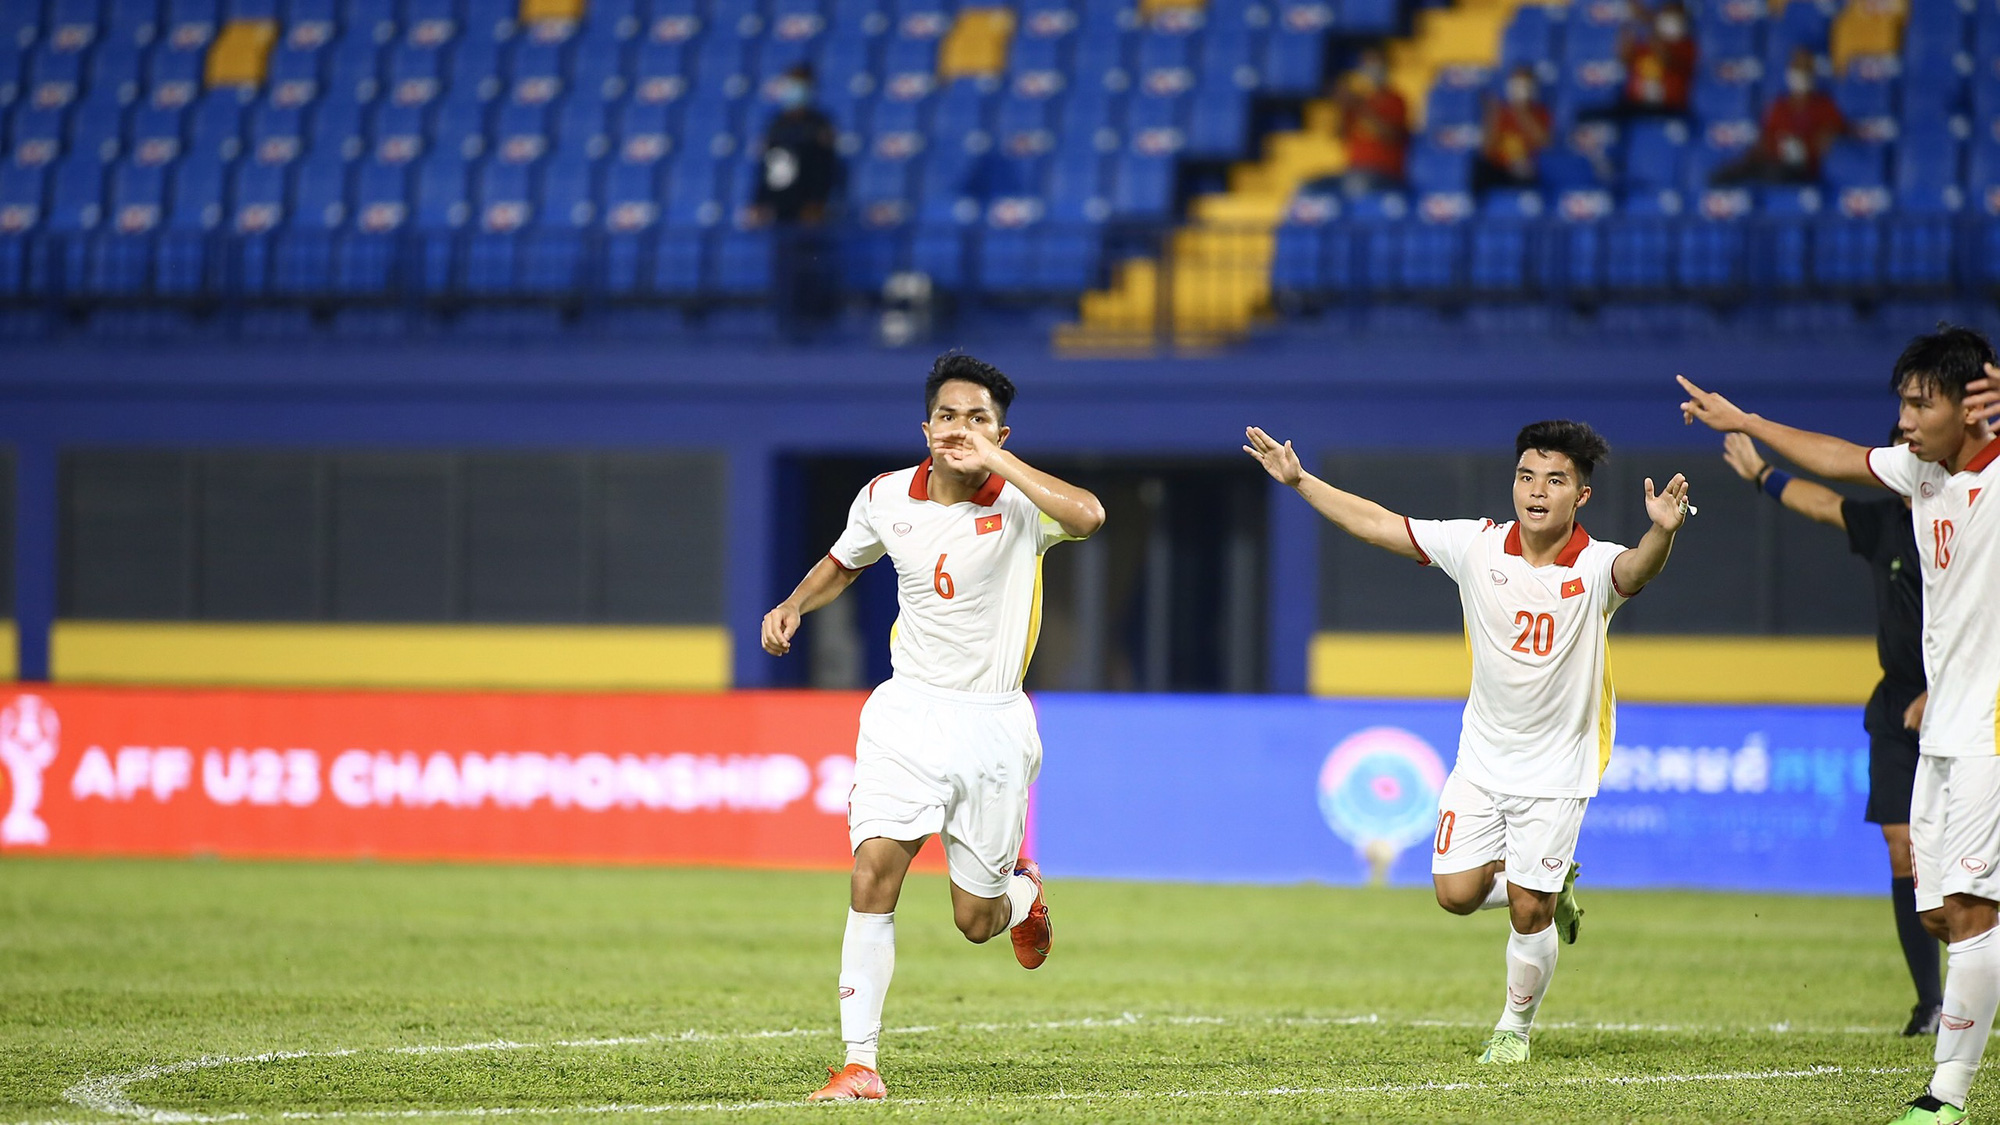 Dụng Quang Nho tỏa sáng, U23 Việt Nam thắng đậm Singapore 7-0 - Ảnh 1.